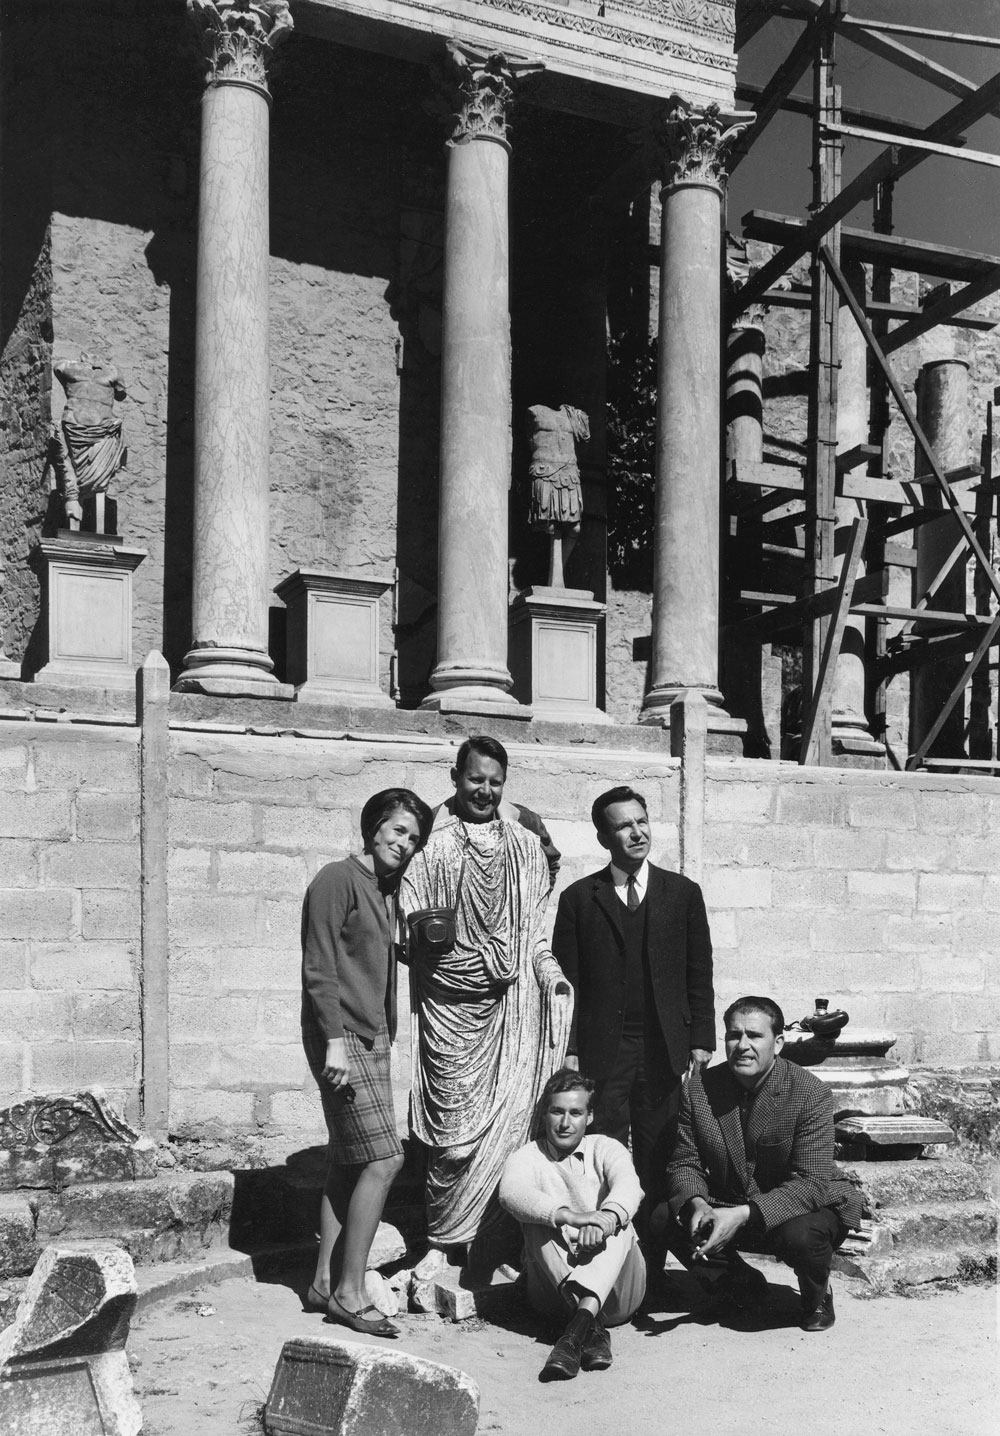 4.-Teatro romano (Reinhard Friedrich con su esposa, Theodor Hauschild, Tilo Ulbert y el conductor), Mérida. Foto: Reinhard Friedrich, 1969.